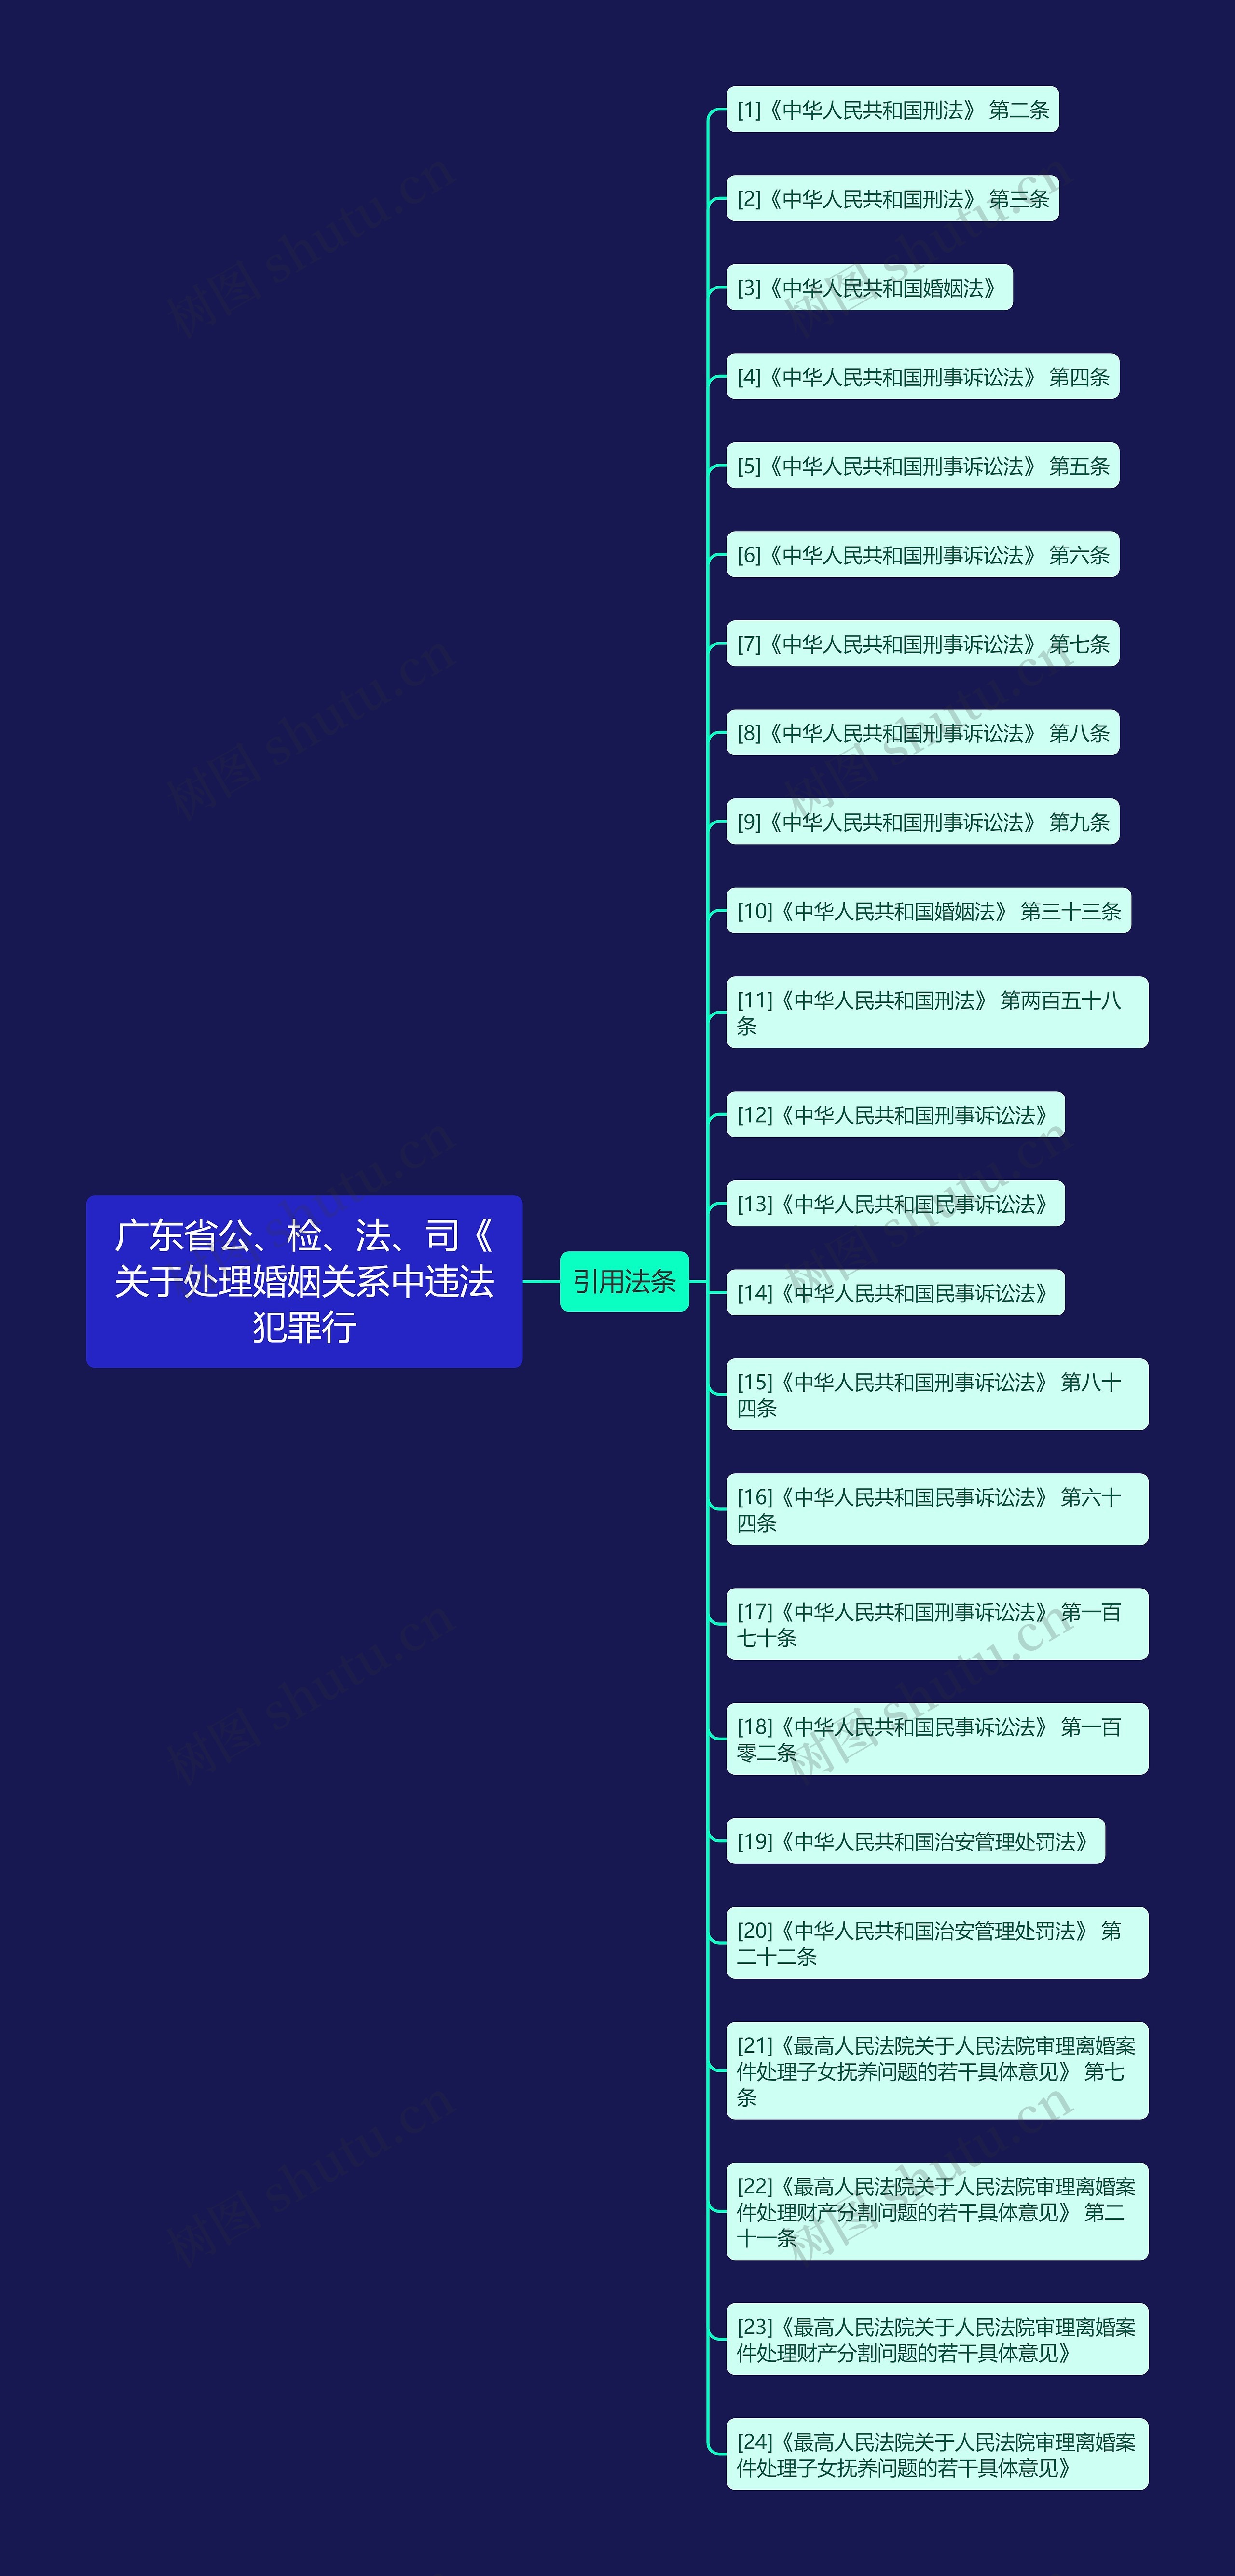 广东省公、检、法、司《关于处理婚姻关系中违法犯罪行